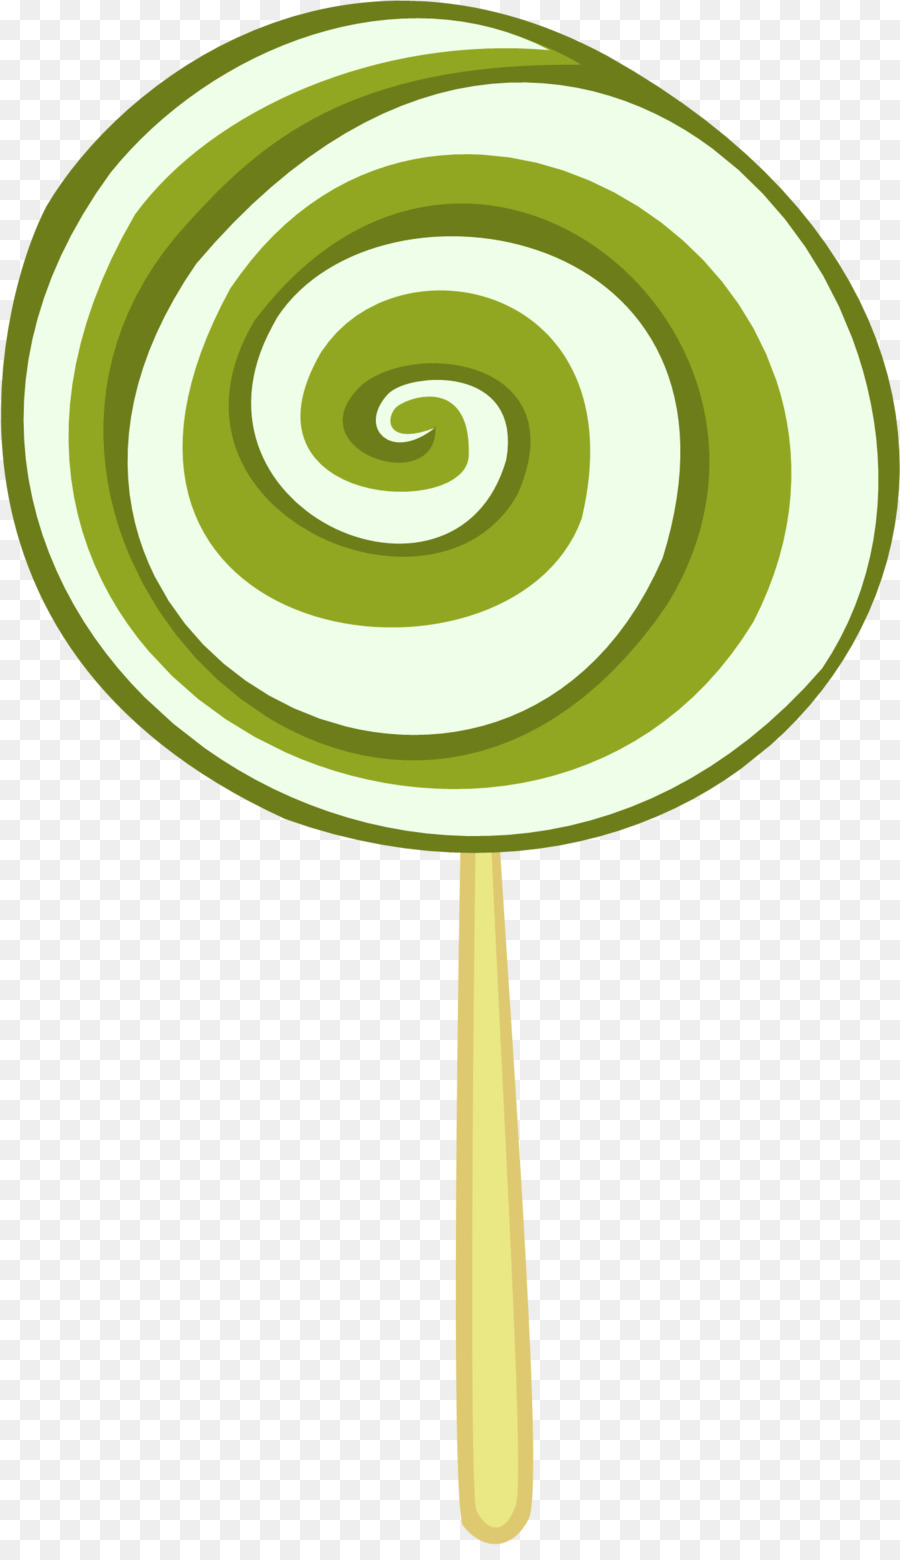 Lollipop cartoon clipart.